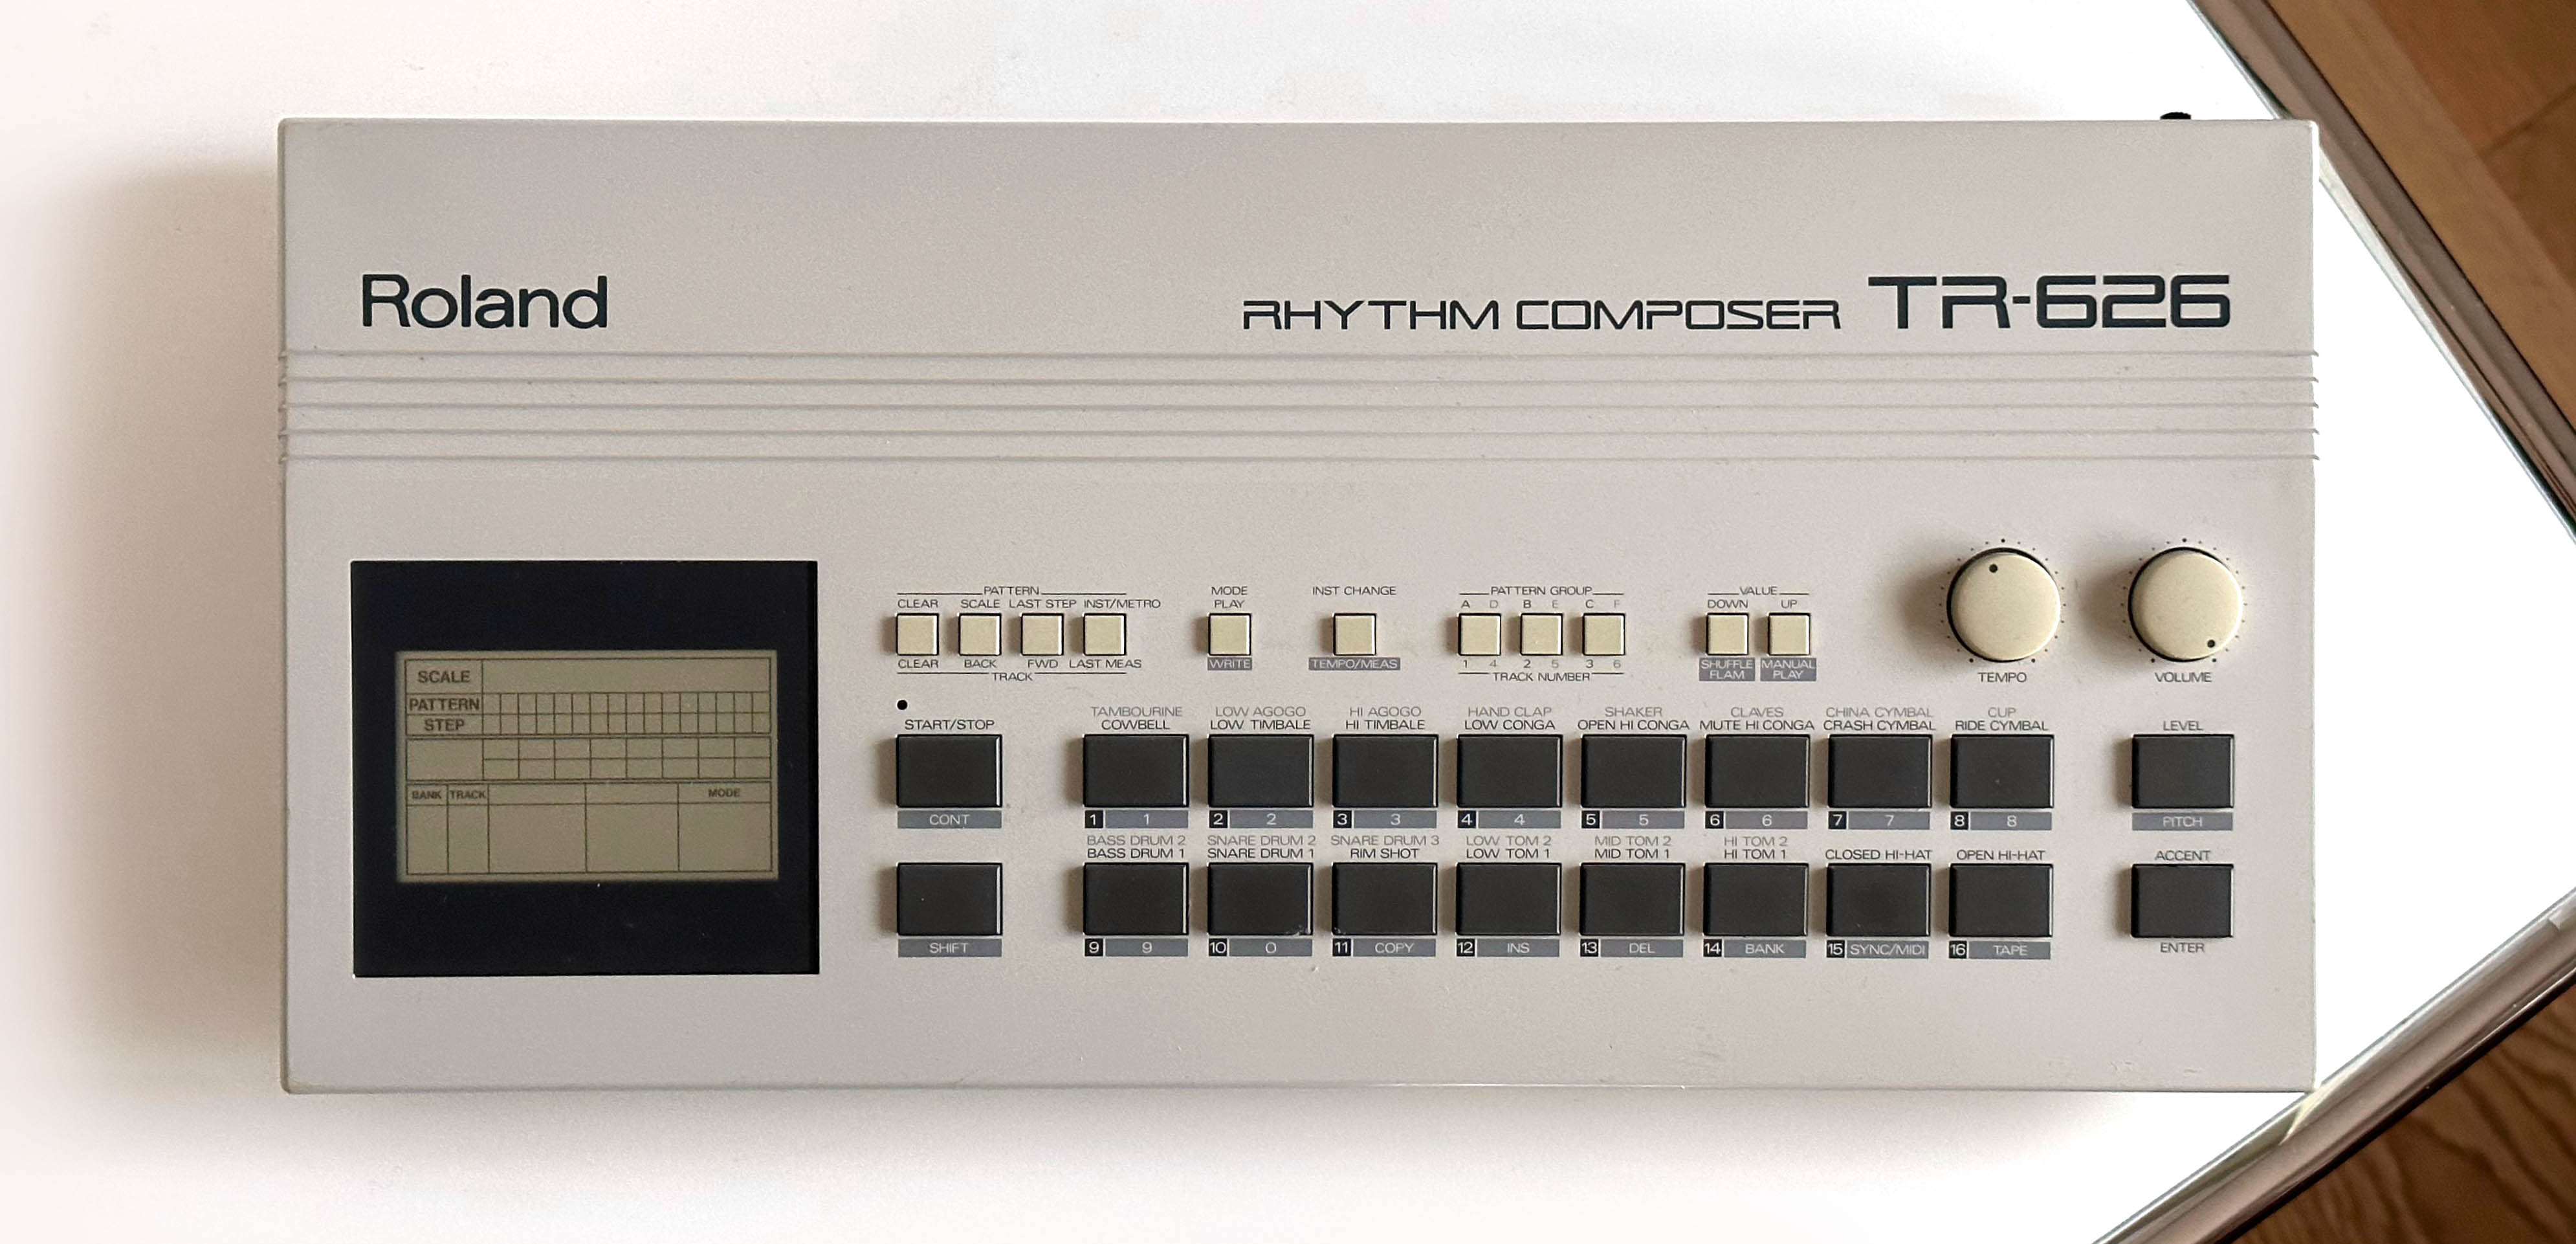 Roland TR-626 Rhythm composer